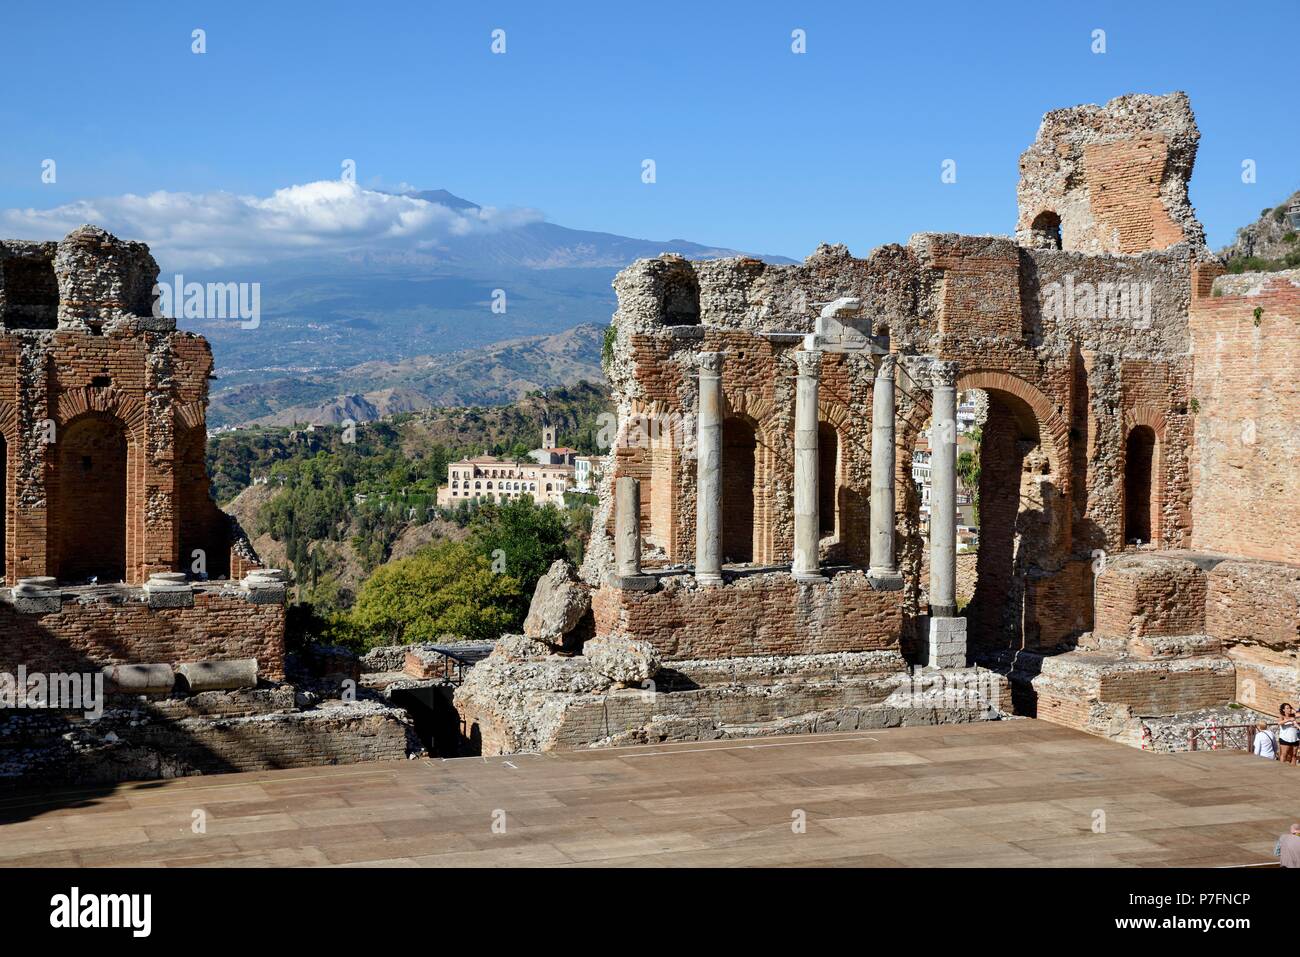 Teatro Greco du 3e siècle de notre ère avec une vue sur le volcan Etna, le théâtre grec, Taormina, Messina province, Sicile, Italie Banque D'Images